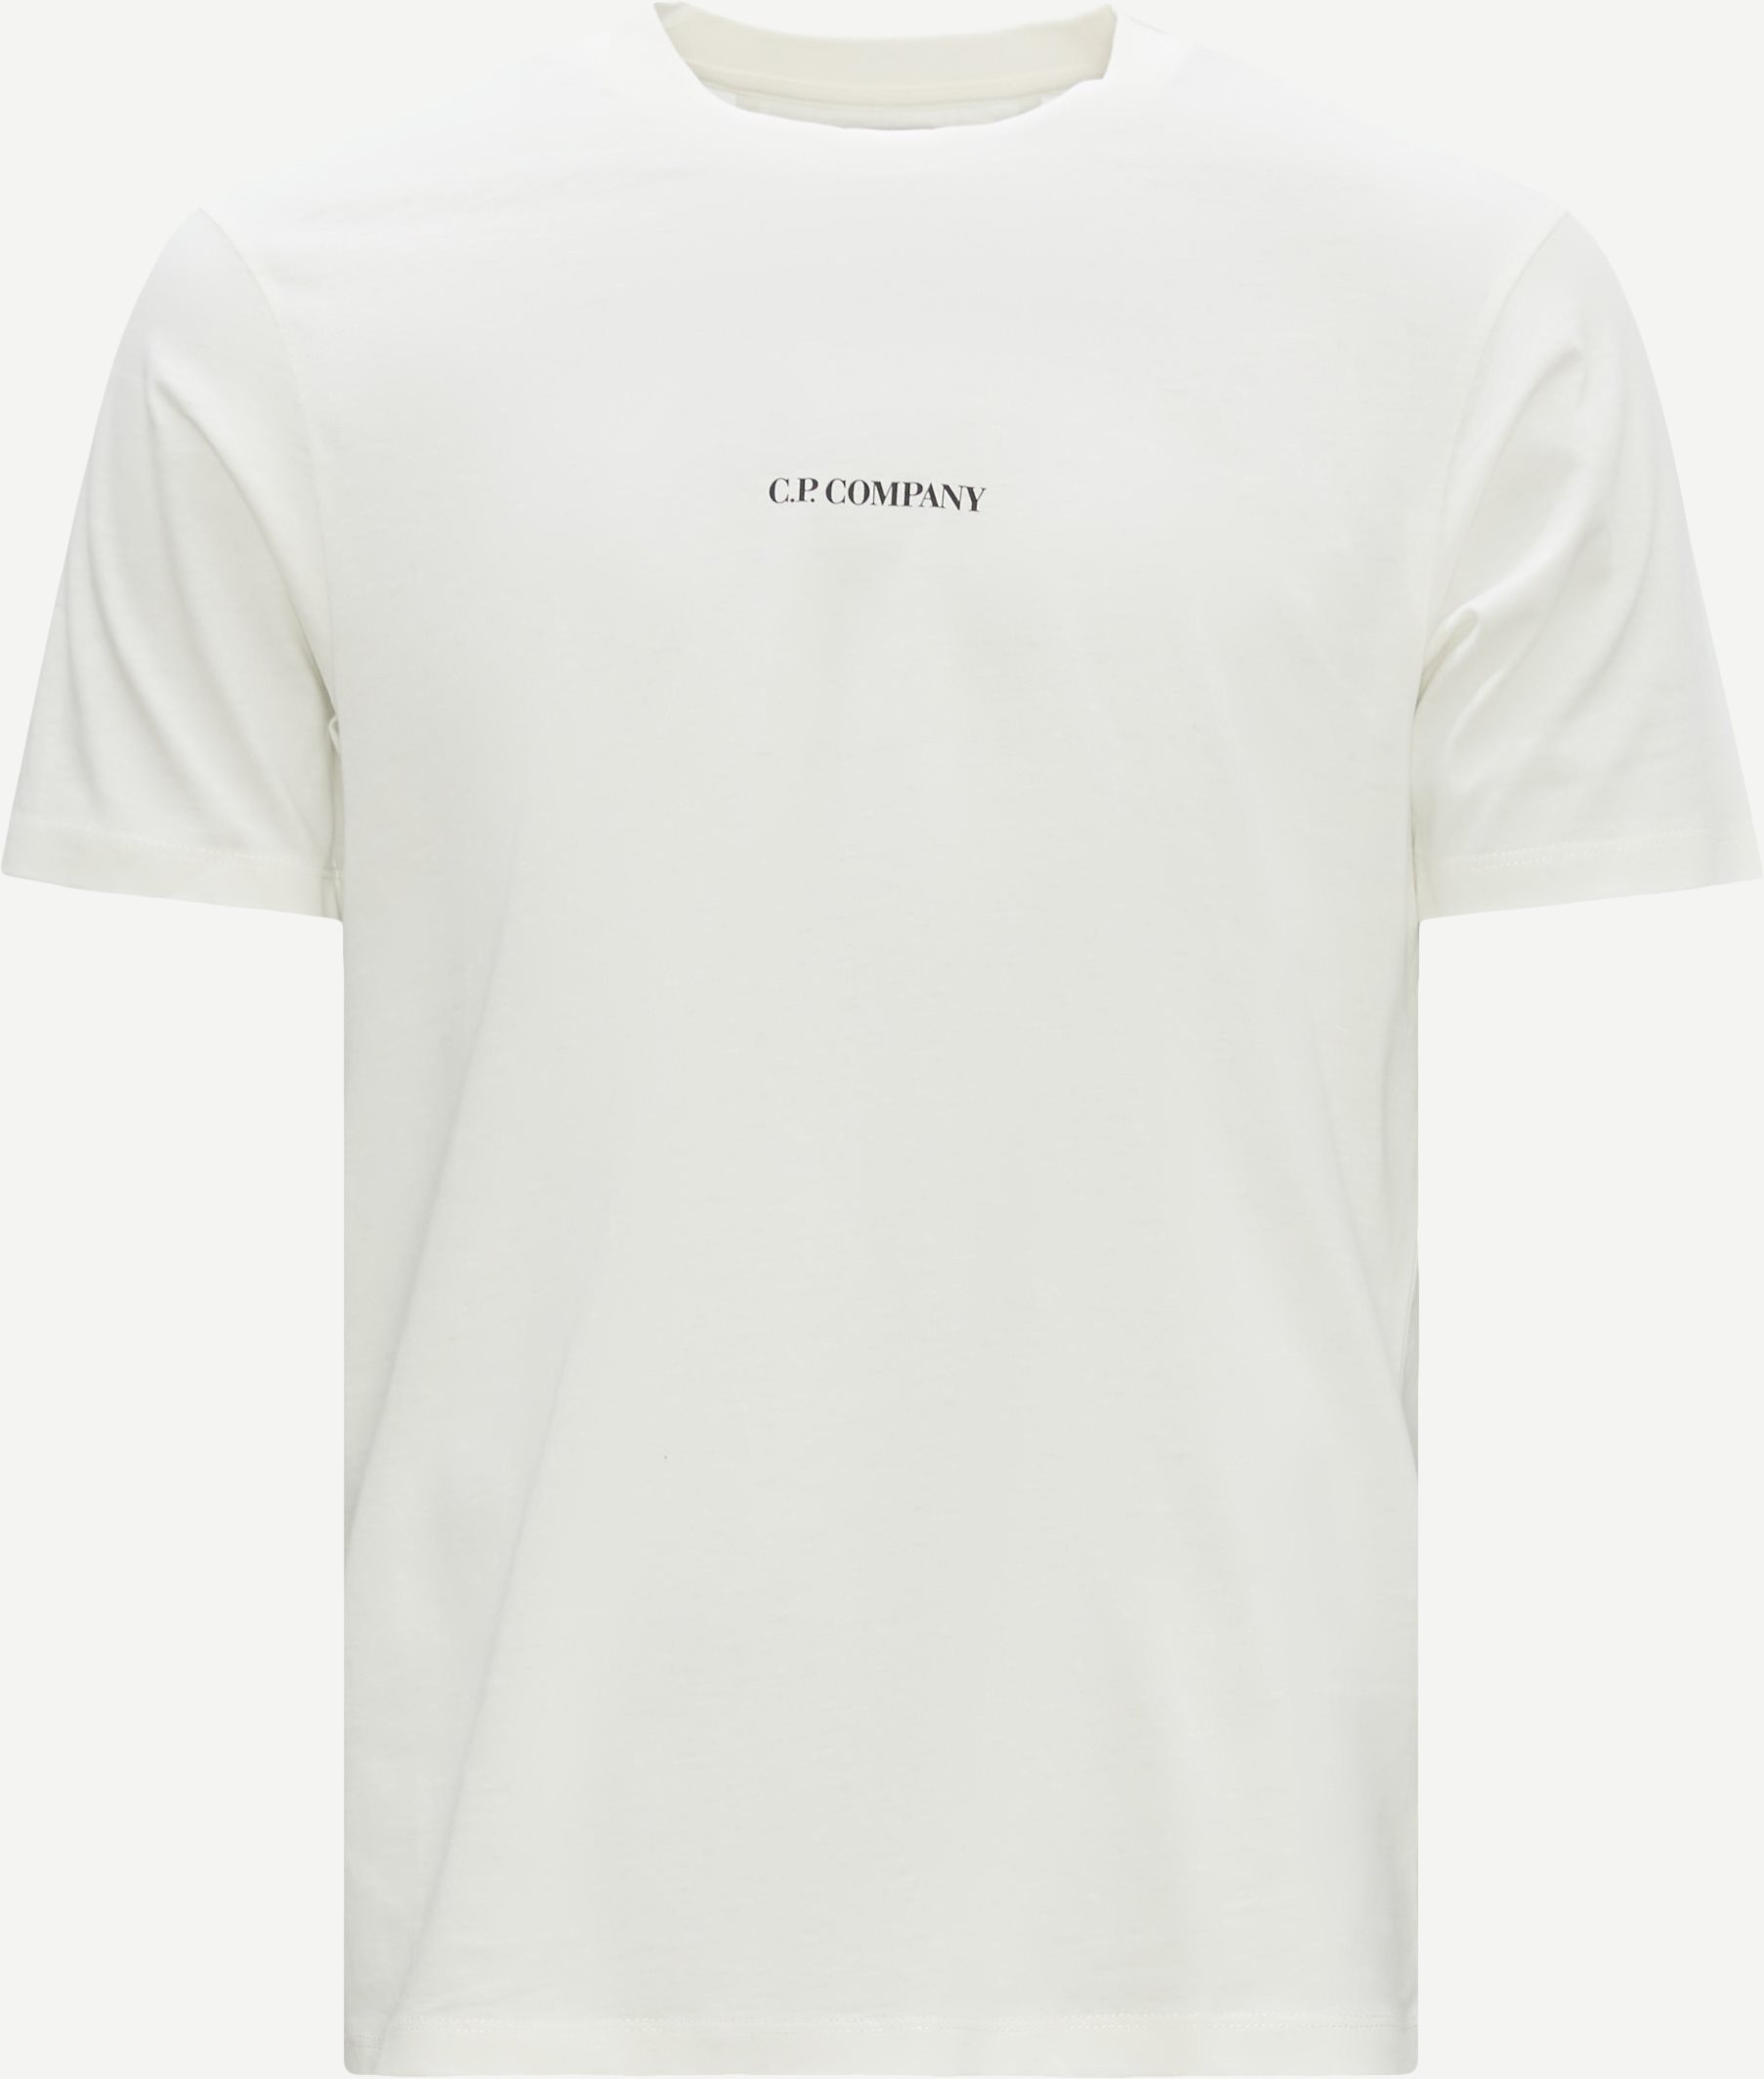 C.P. Company T-shirts TS190A 6011W White